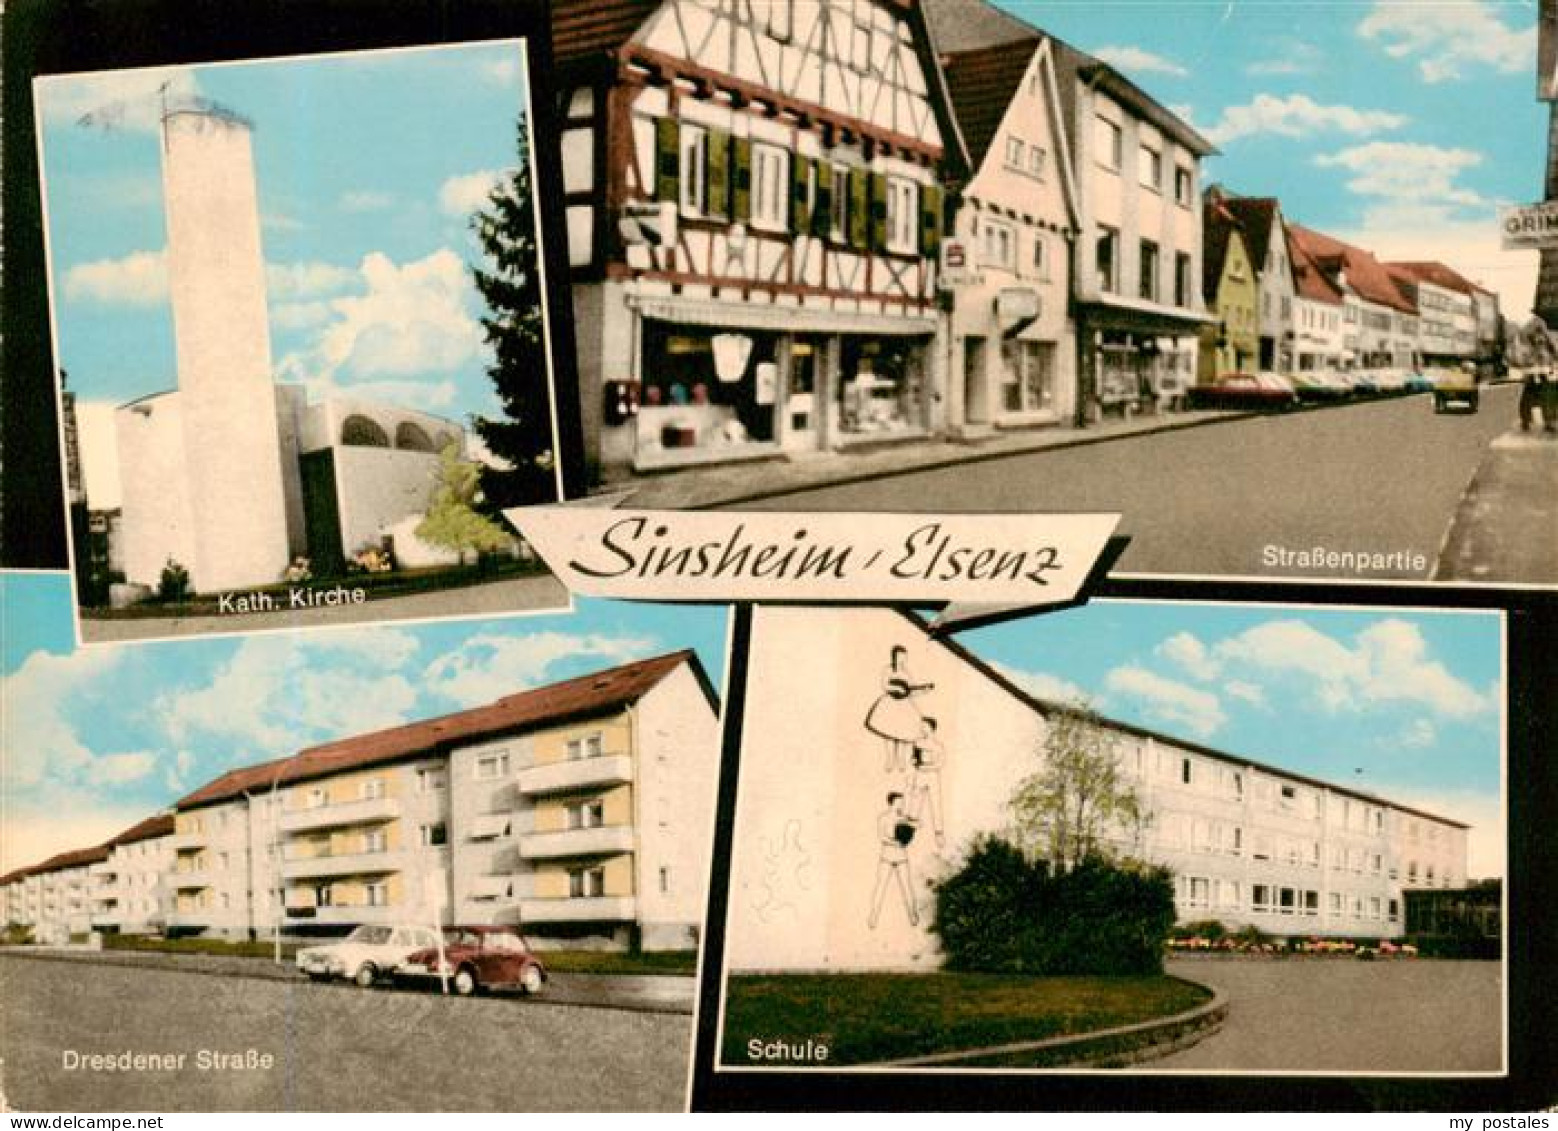 73890987 Sinsheim Elsenz Kath Kirche Strassenpartie Dresdner Strasse Schule Sins - Sinsheim